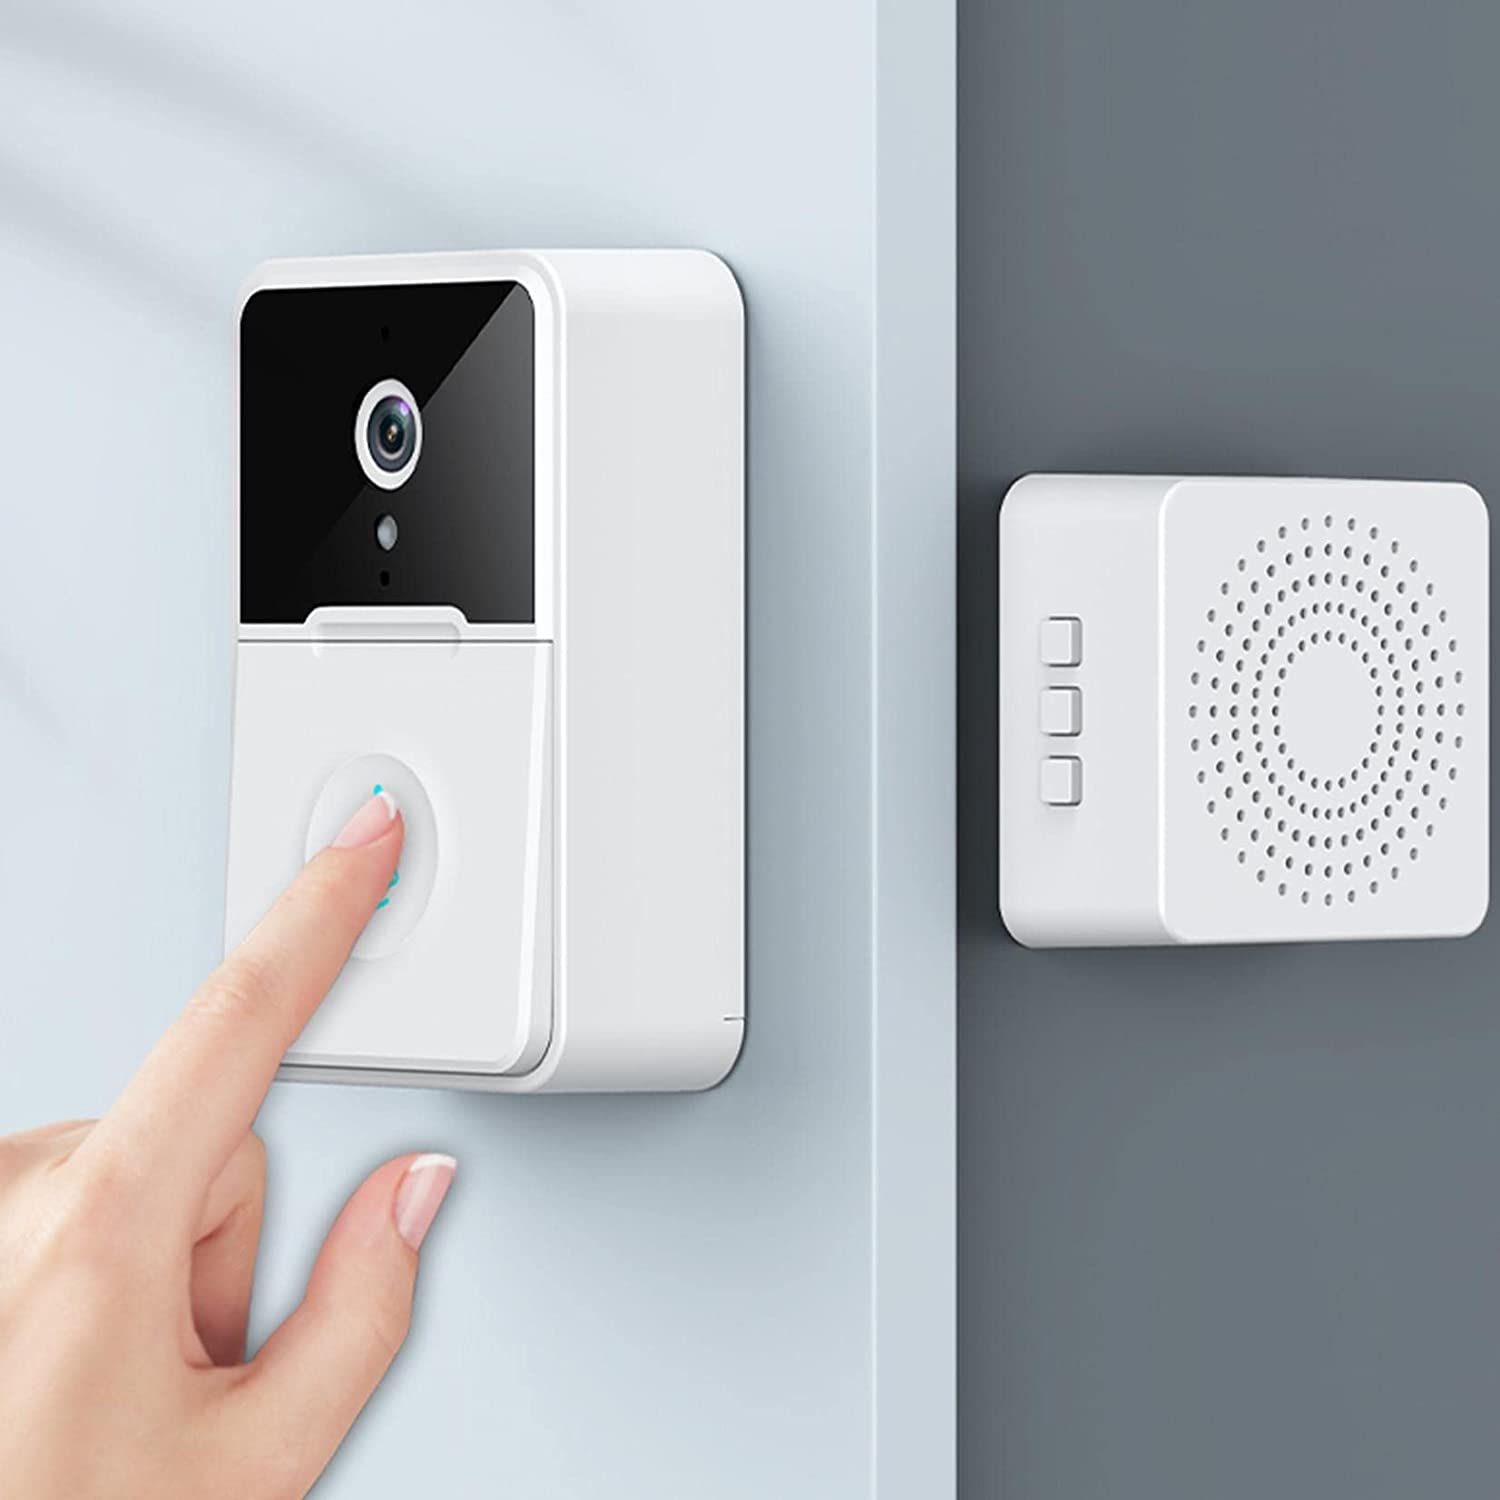 Ring Video Doorbell, Smart Wireless Remote Video Doorbell Intelligent